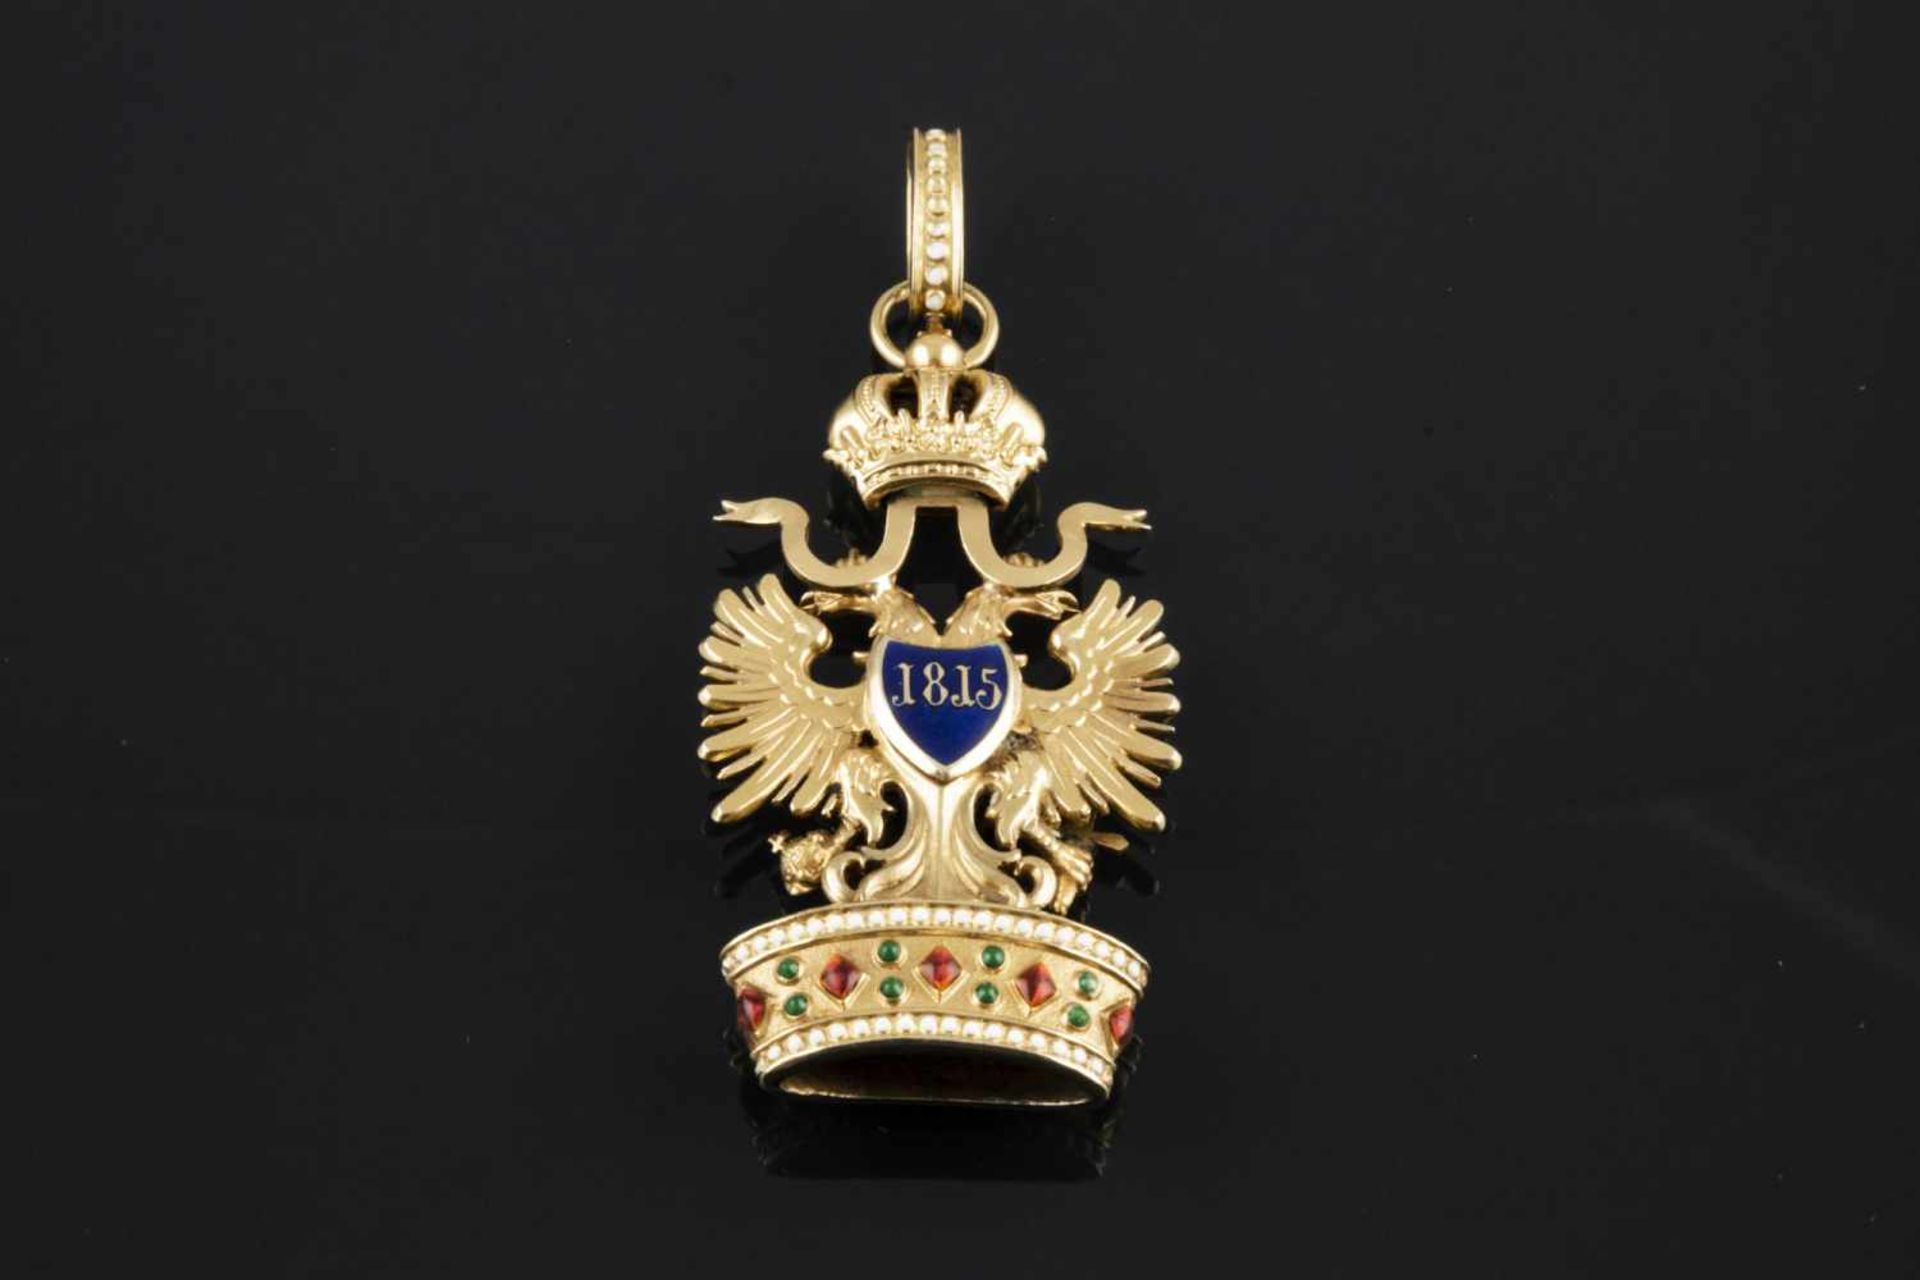 COLGANTE Realizado en oro y pequeña pieza de metal, representando el escudo del Imperio Austriaco